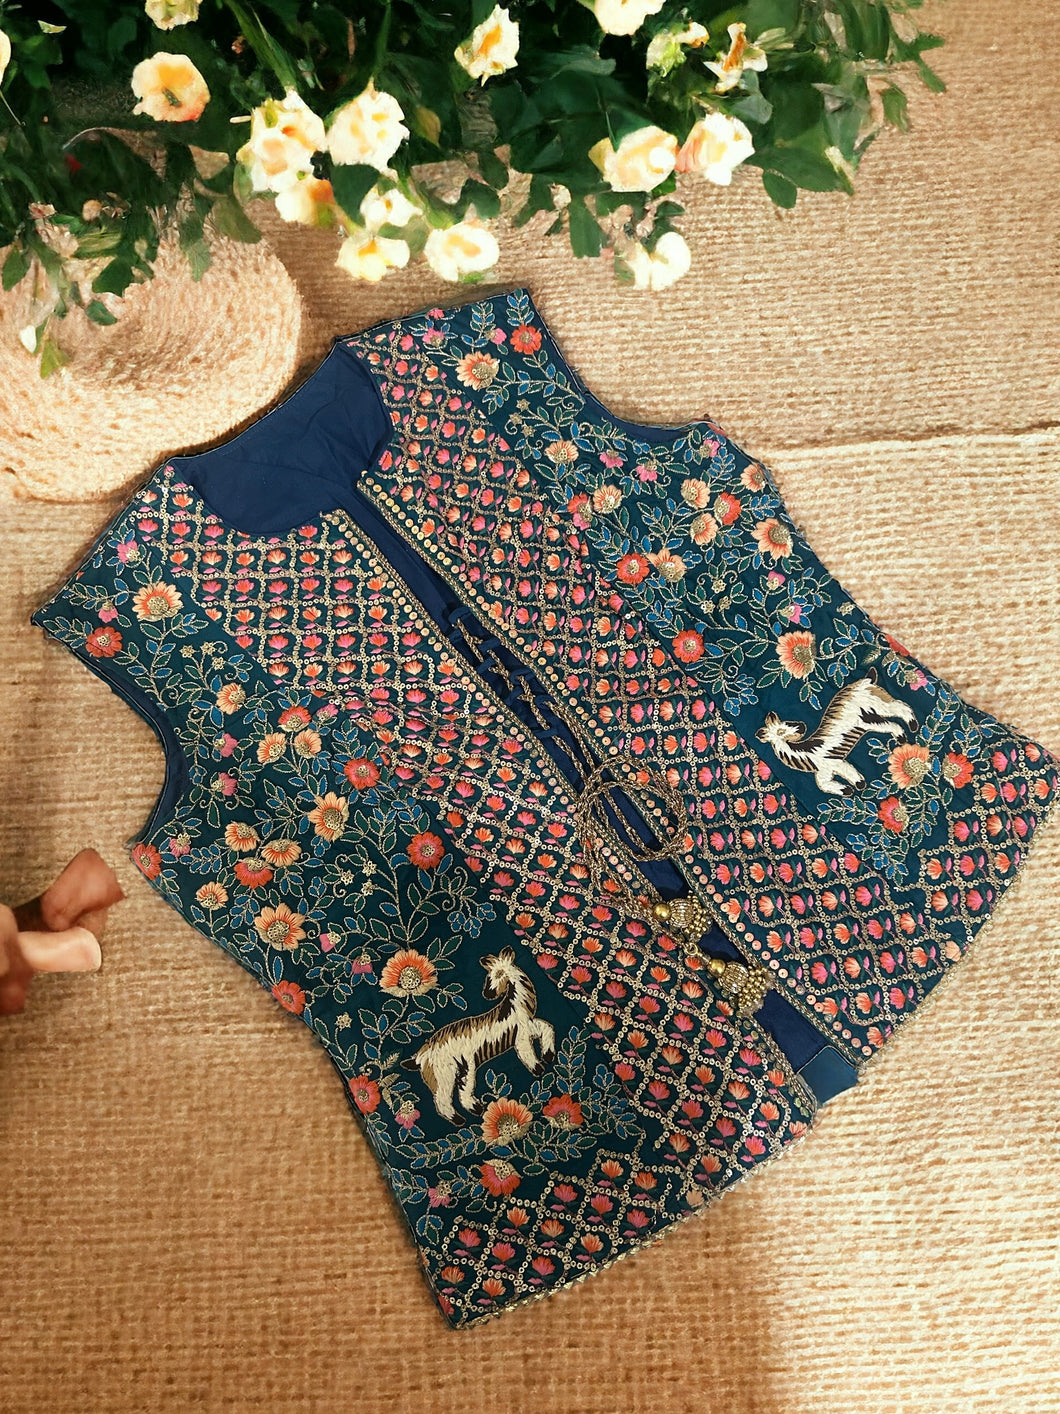 Embroidery Jungle theme Jacket Koti Blouse 36-40